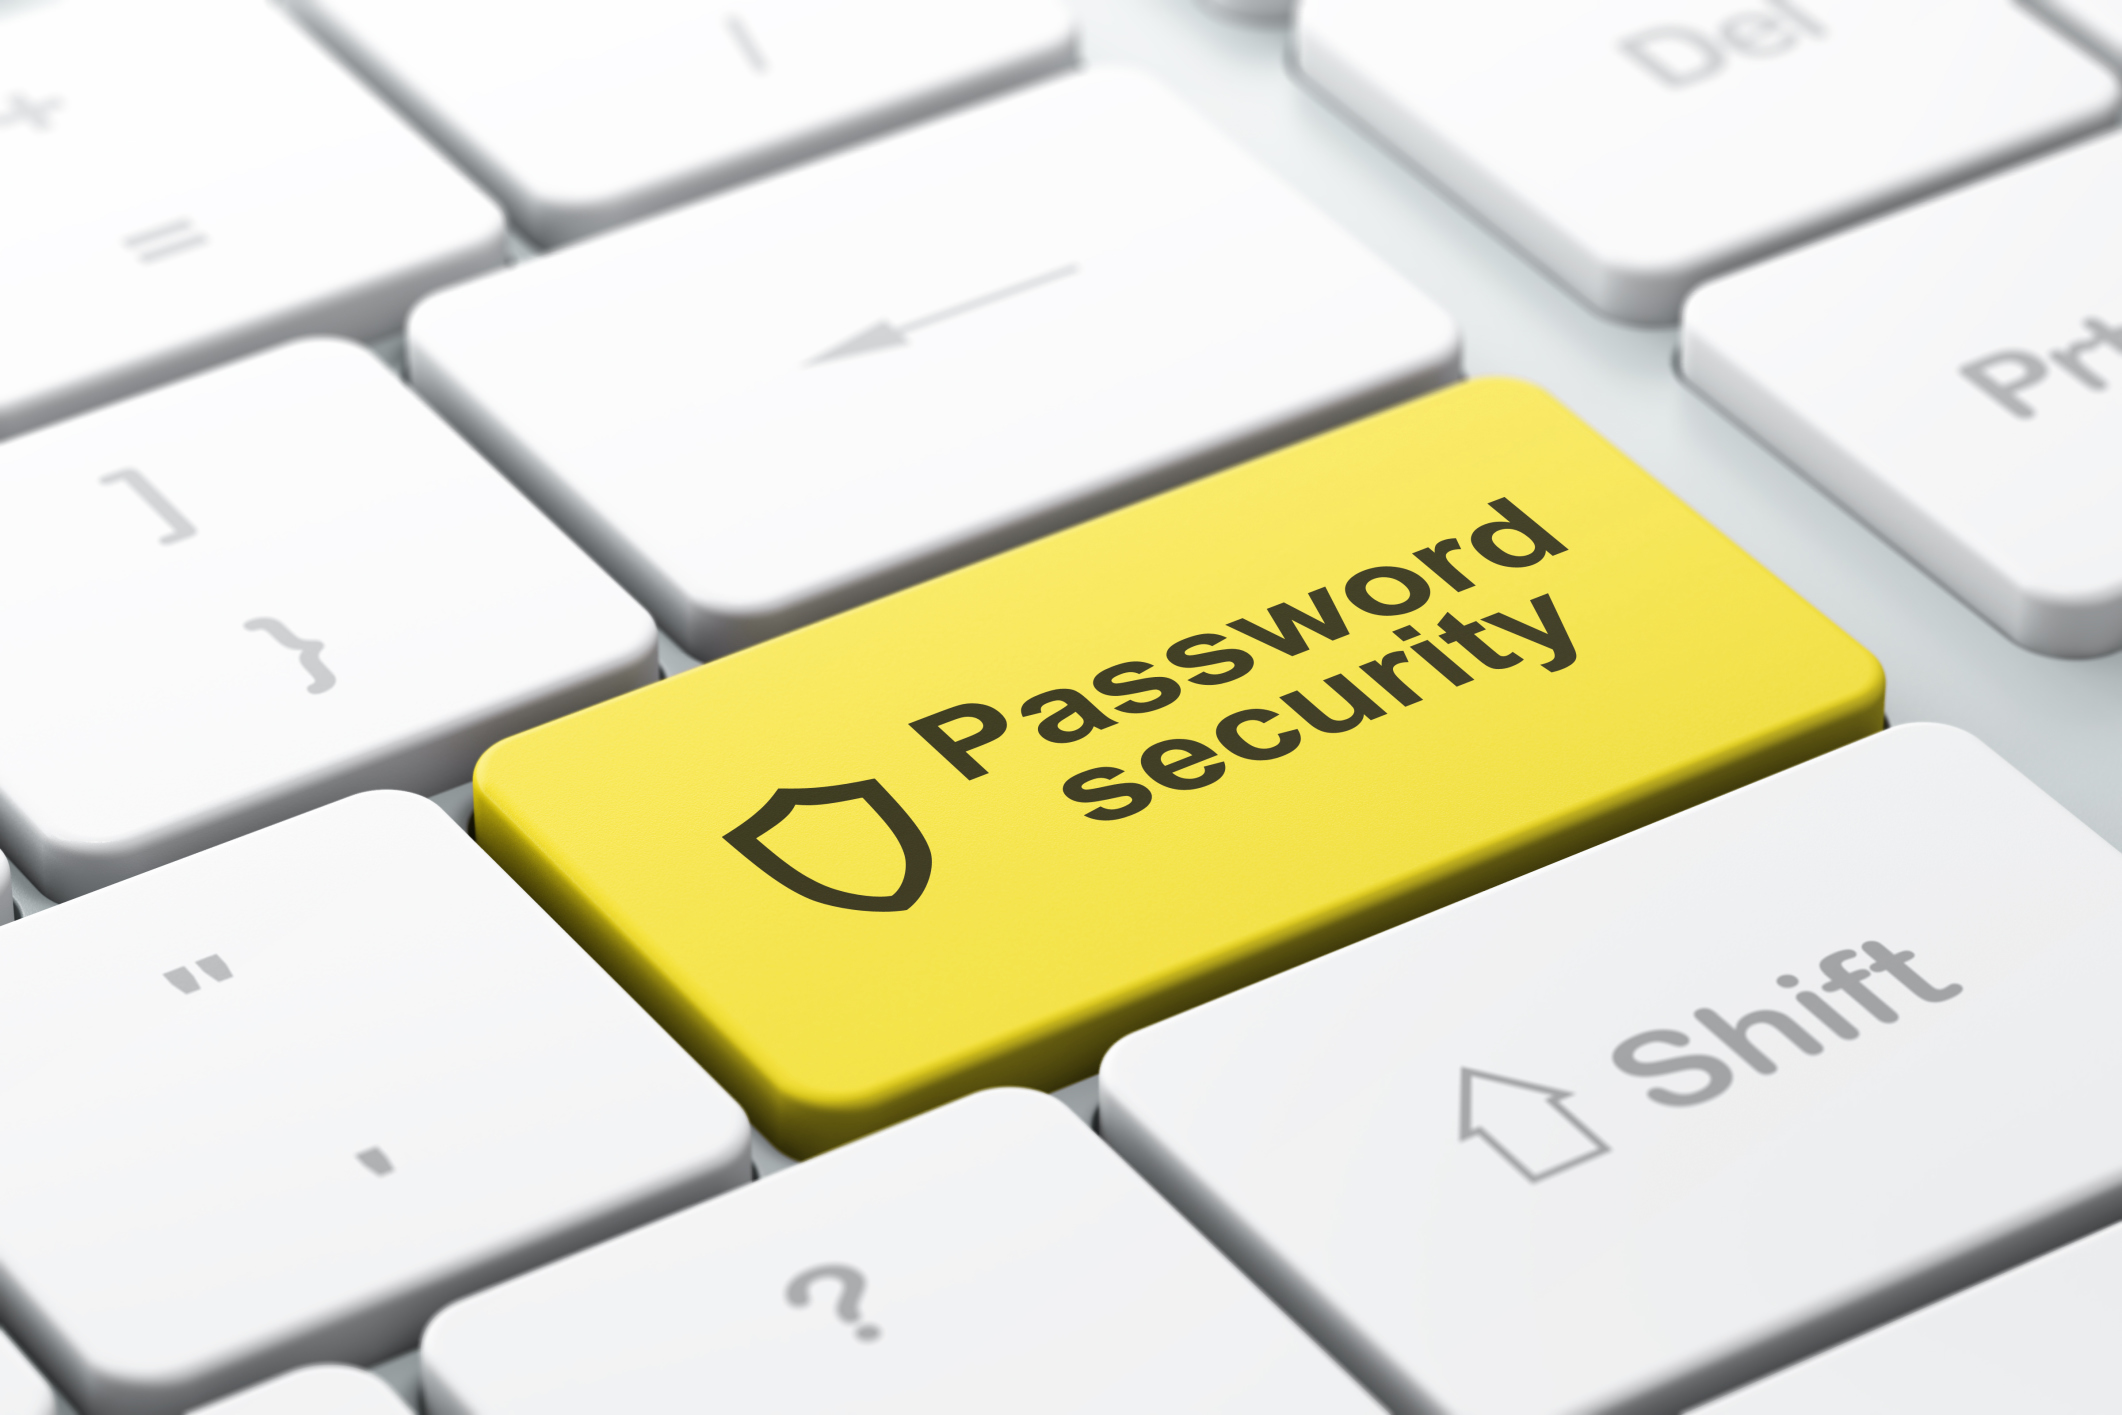 【Back to basics】Lưu password của user như thế nào?